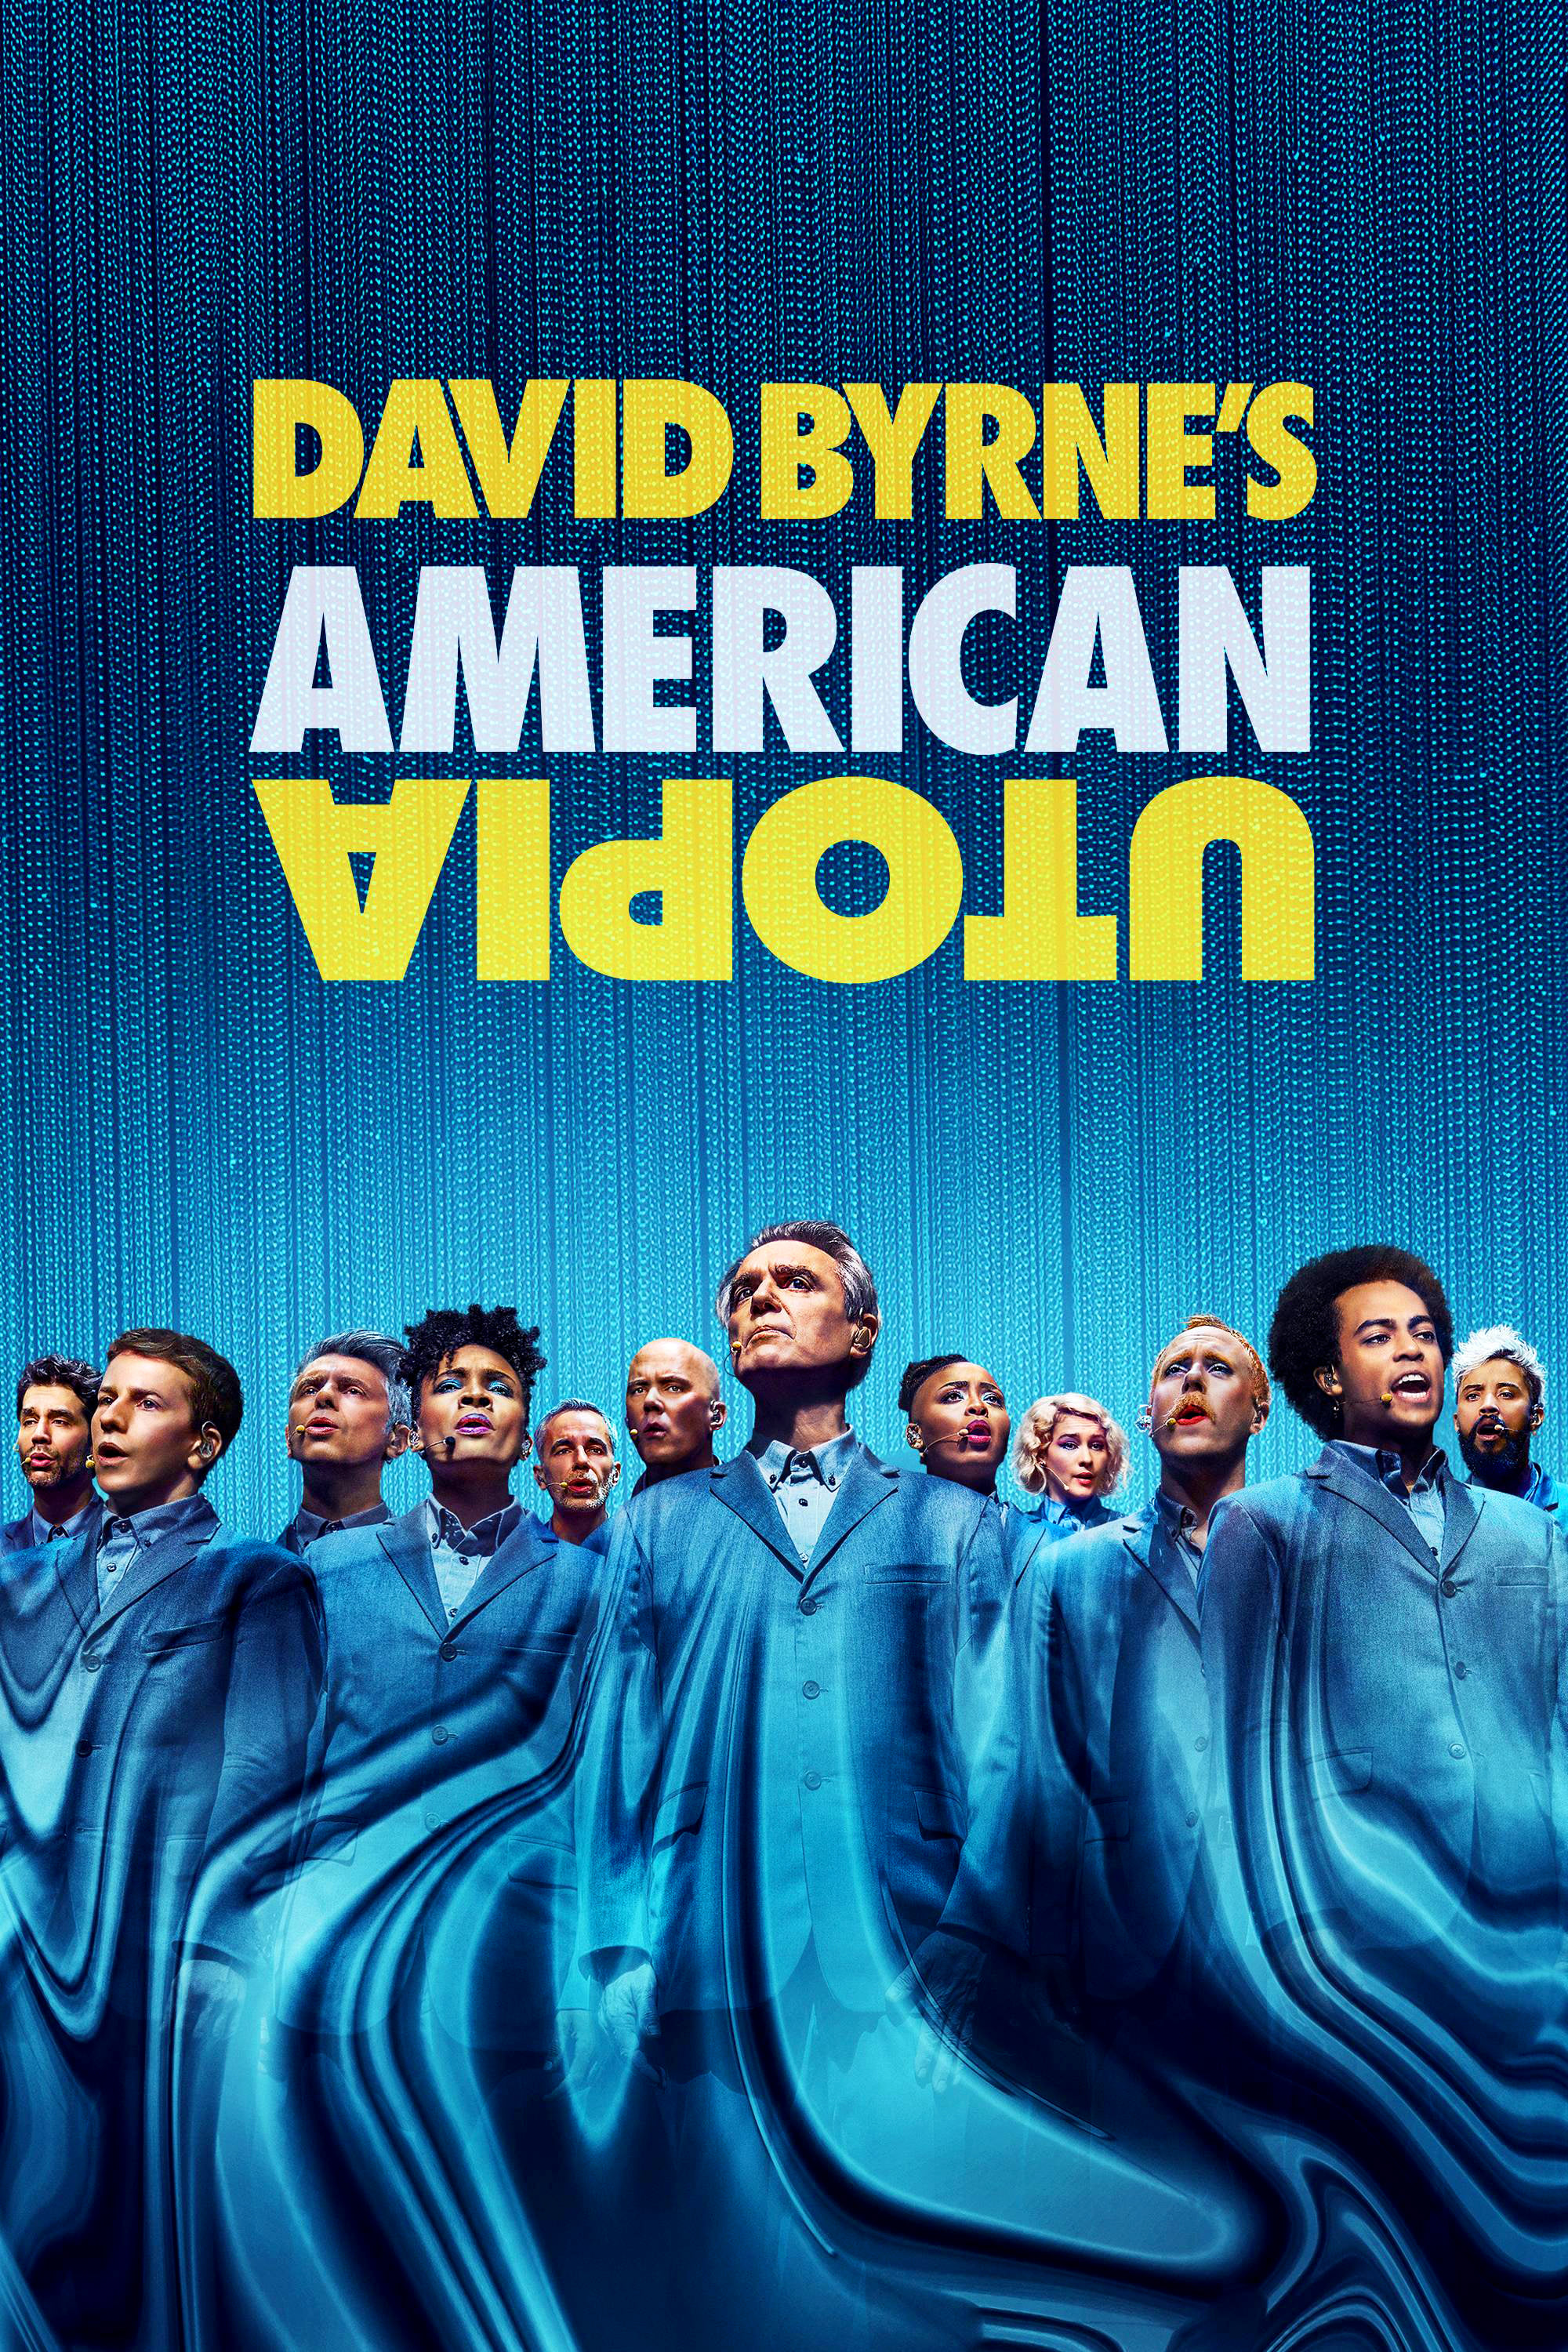 David Byrne's American Utopia - David Byrne's American Utopia (2020)